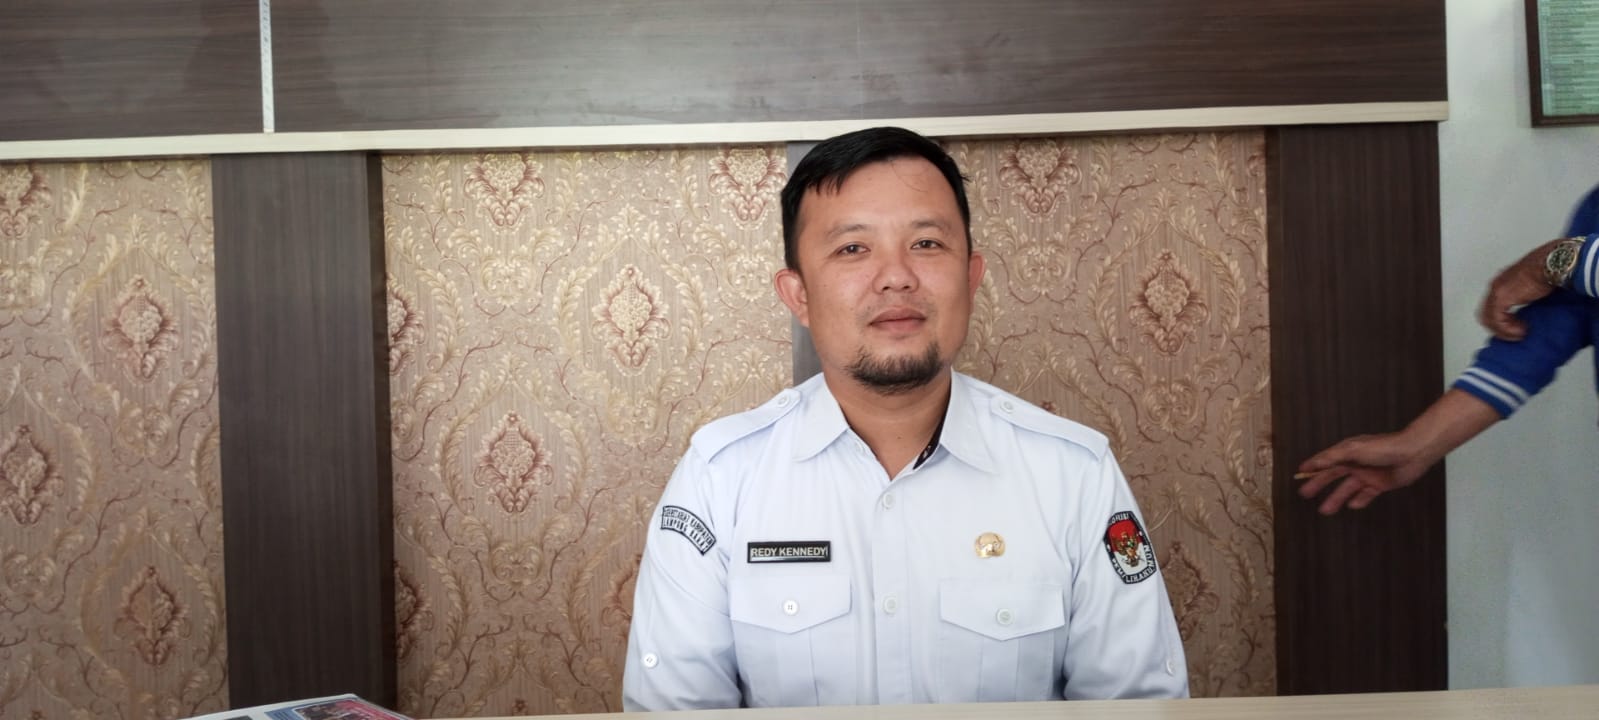 Jumlah TPS Pada Pilkada Lampung Barat 524, Tapi Masih akan Dievaluasi